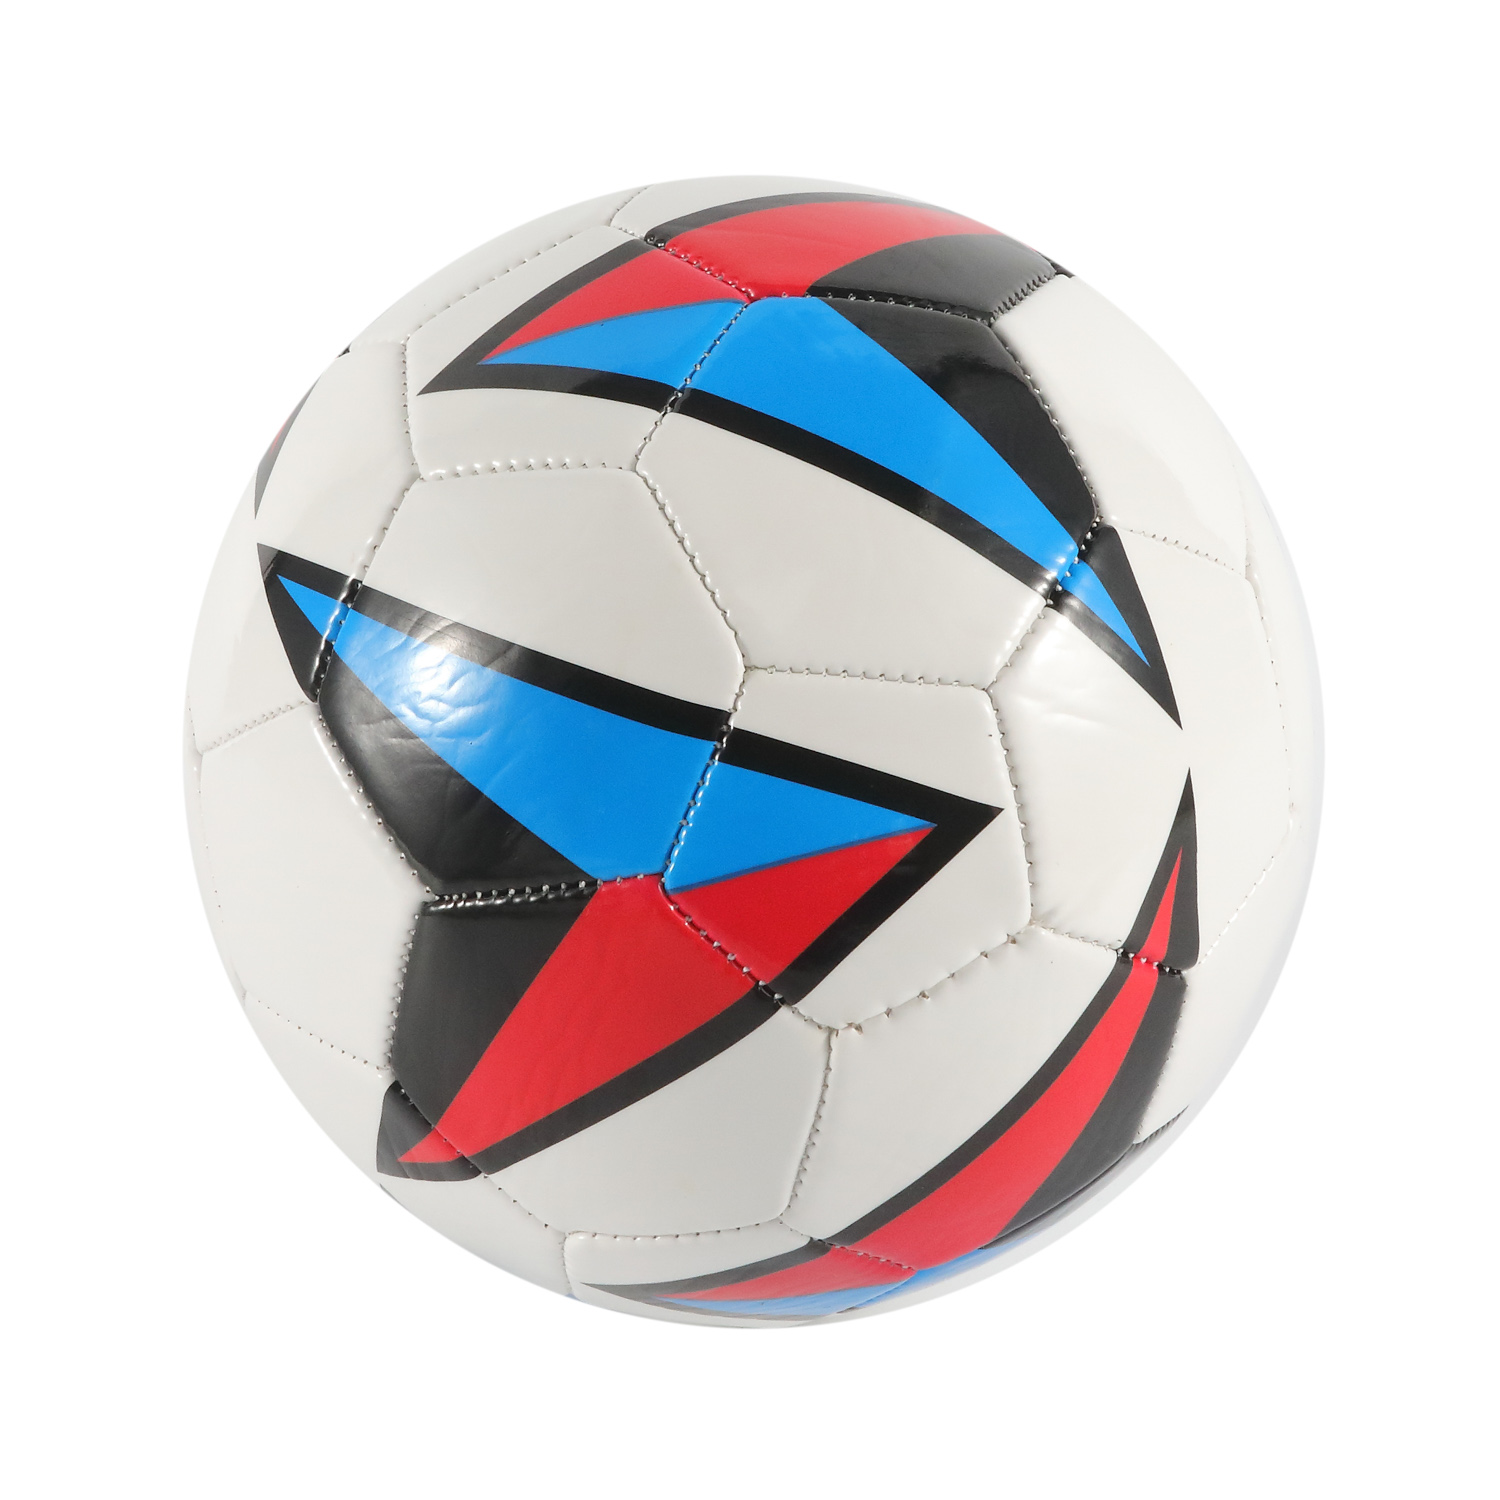 PVC / TPU / PVC maschinengenähter / laminierter Fußball Kundenspezifischer OEM-Fußball